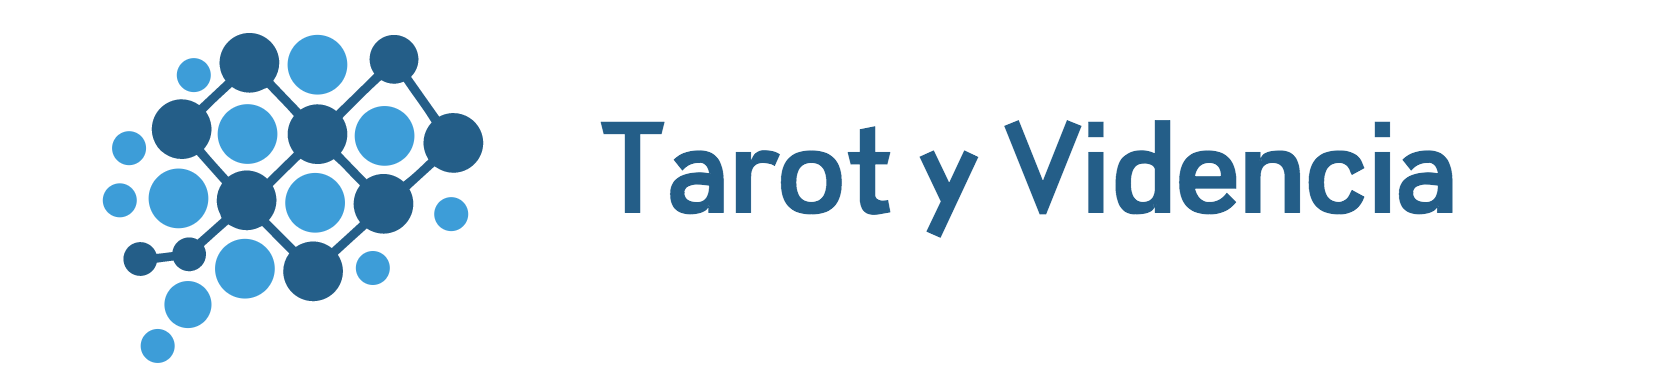 Tarot y Videncia